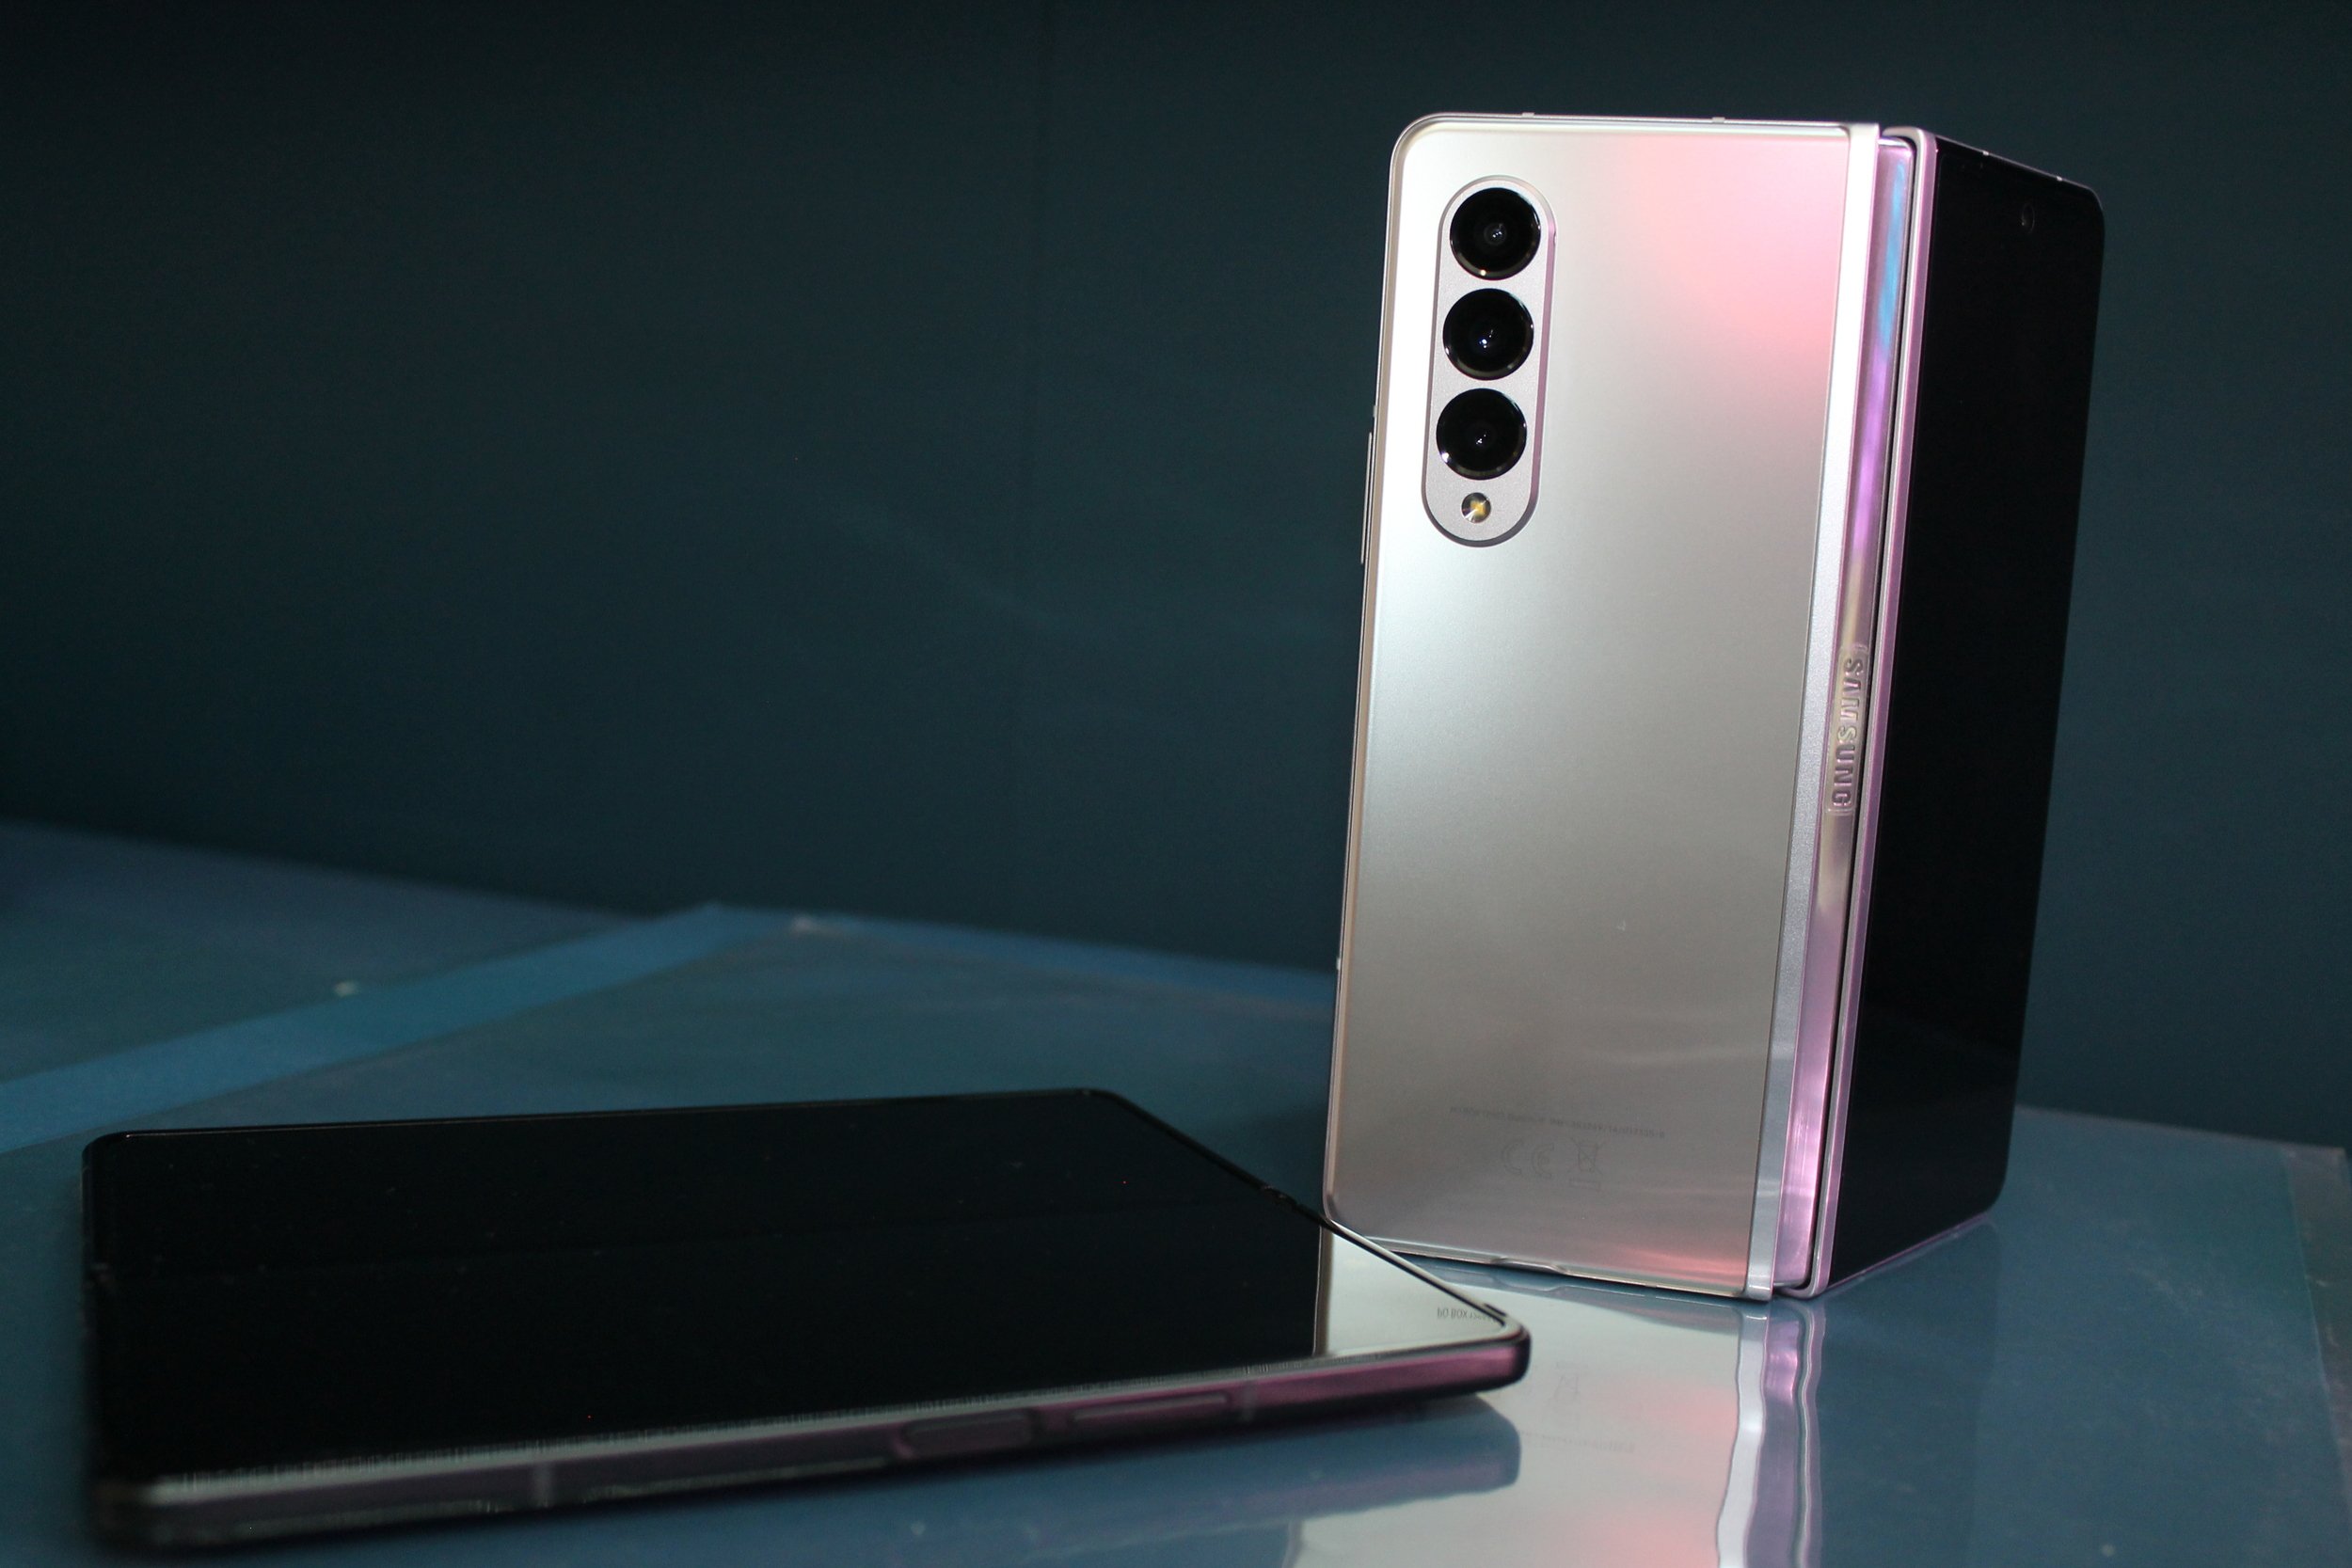 Samsung apresenta o Galaxy Fold, celular dobrável e com 6 câmeras